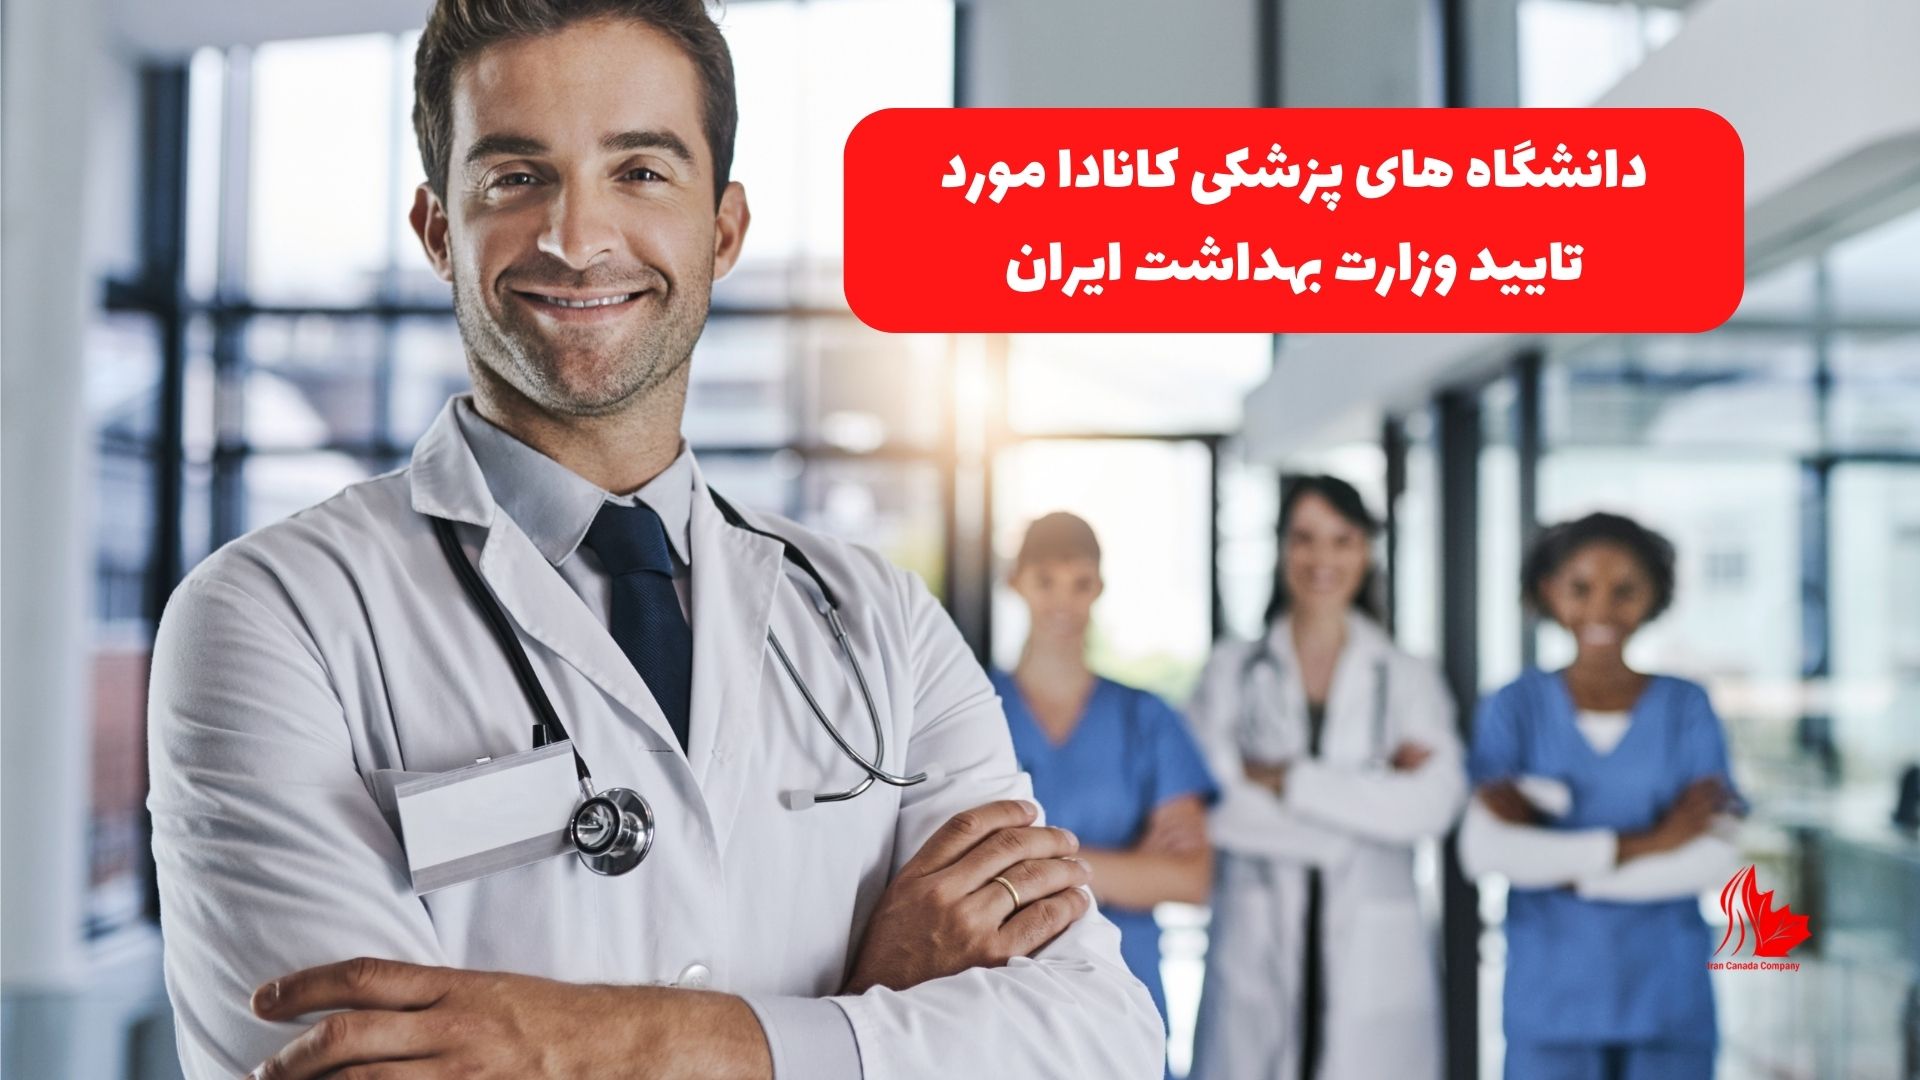 دانشگاه های پزشکی کانادا مورد تایید وزارت بهداشت ایران